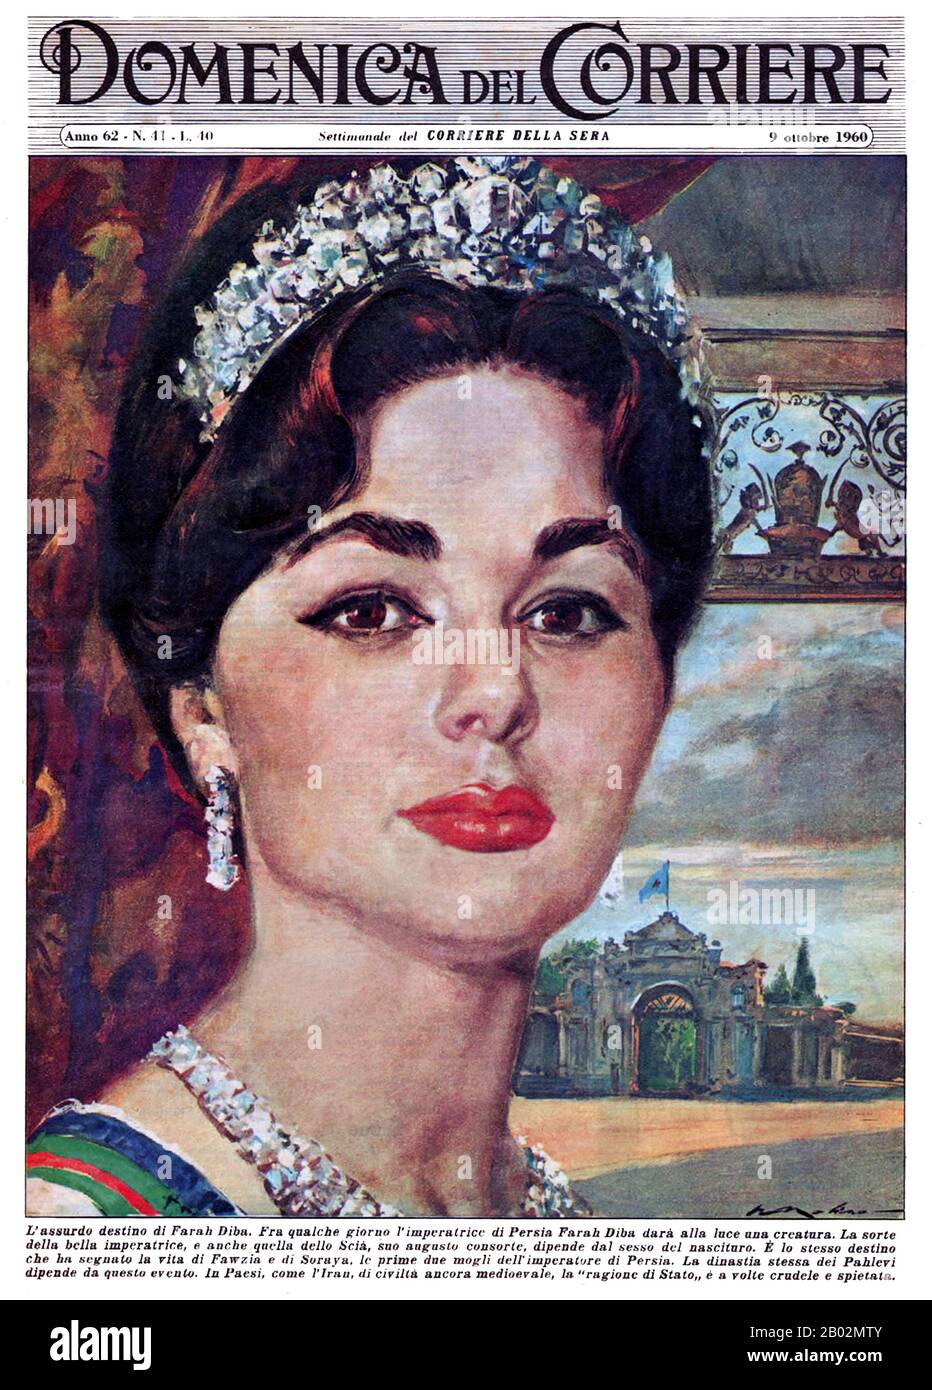 Farah Pahlavi (Farah Diba, 14 ottobre 1938, Teheran); Persiano: فرح پهلوی, ex regina e imperatrice dell'Iran. È la vedova di Mohammad Reza Pahlavi, lo Shah dell'Iran e soltanto l'imperatrice (Shahbanou) dell'Iran moderno. Fu regina consorte dell'Iran dal 1959 al 1967 e imperatrice consort dal 1967 fino all'esilio nel 1979. Anche se i titoli e le distinzioni della famiglia imperiale iraniana sono stati aboliti all'interno dell'Iran dal governo islamico, è ancora denominata Empress o Shahbanou, per cortesia, dai media stranieri così come dai sostenitori della monarchia. Alcuni paesi come l'uni Foto Stock